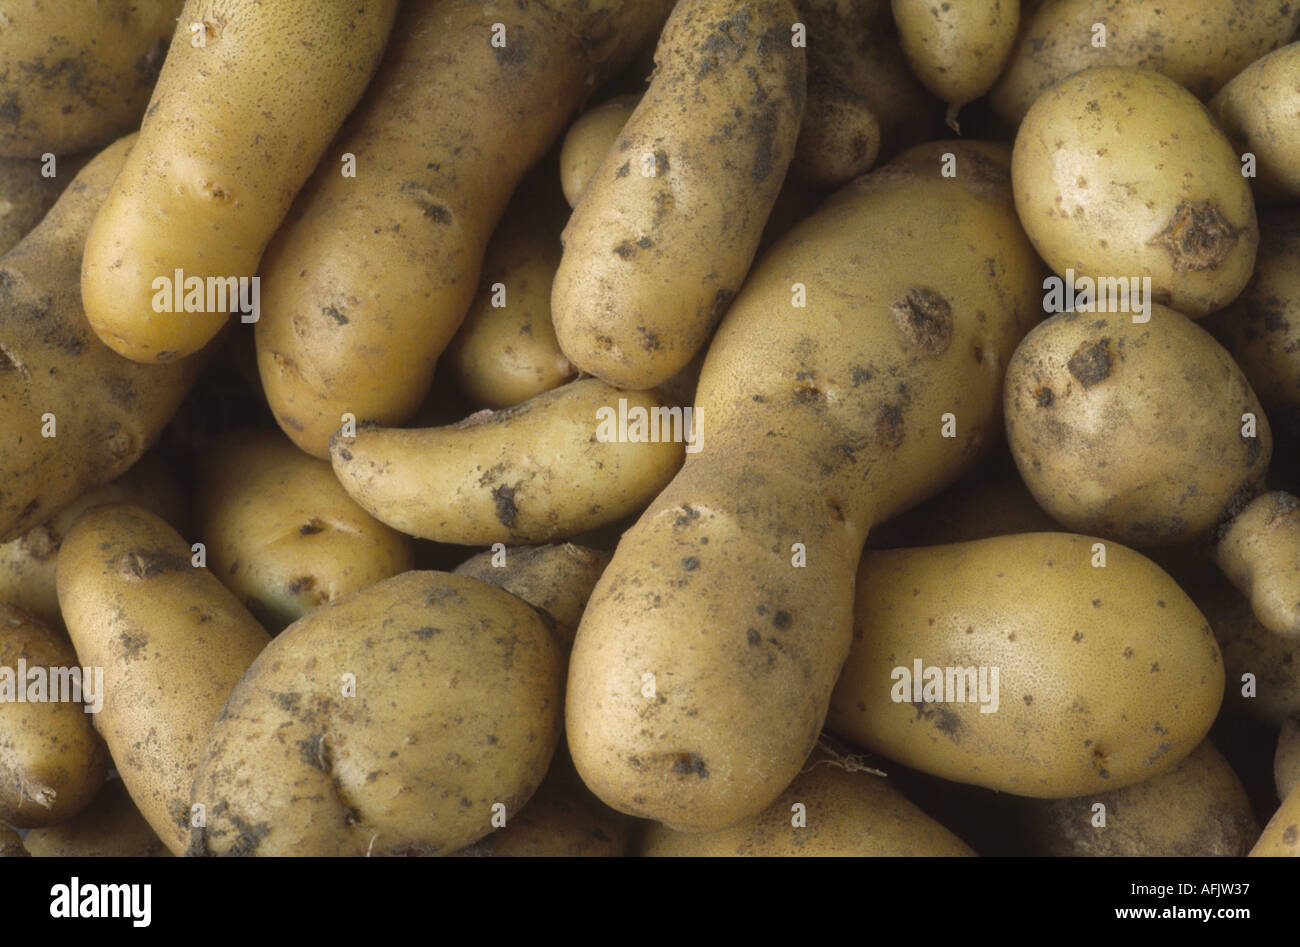 Solanum Tuberosum "Ratte".  AGM frisch gegraben Maincrop Frühkartoffeln. Stockfoto